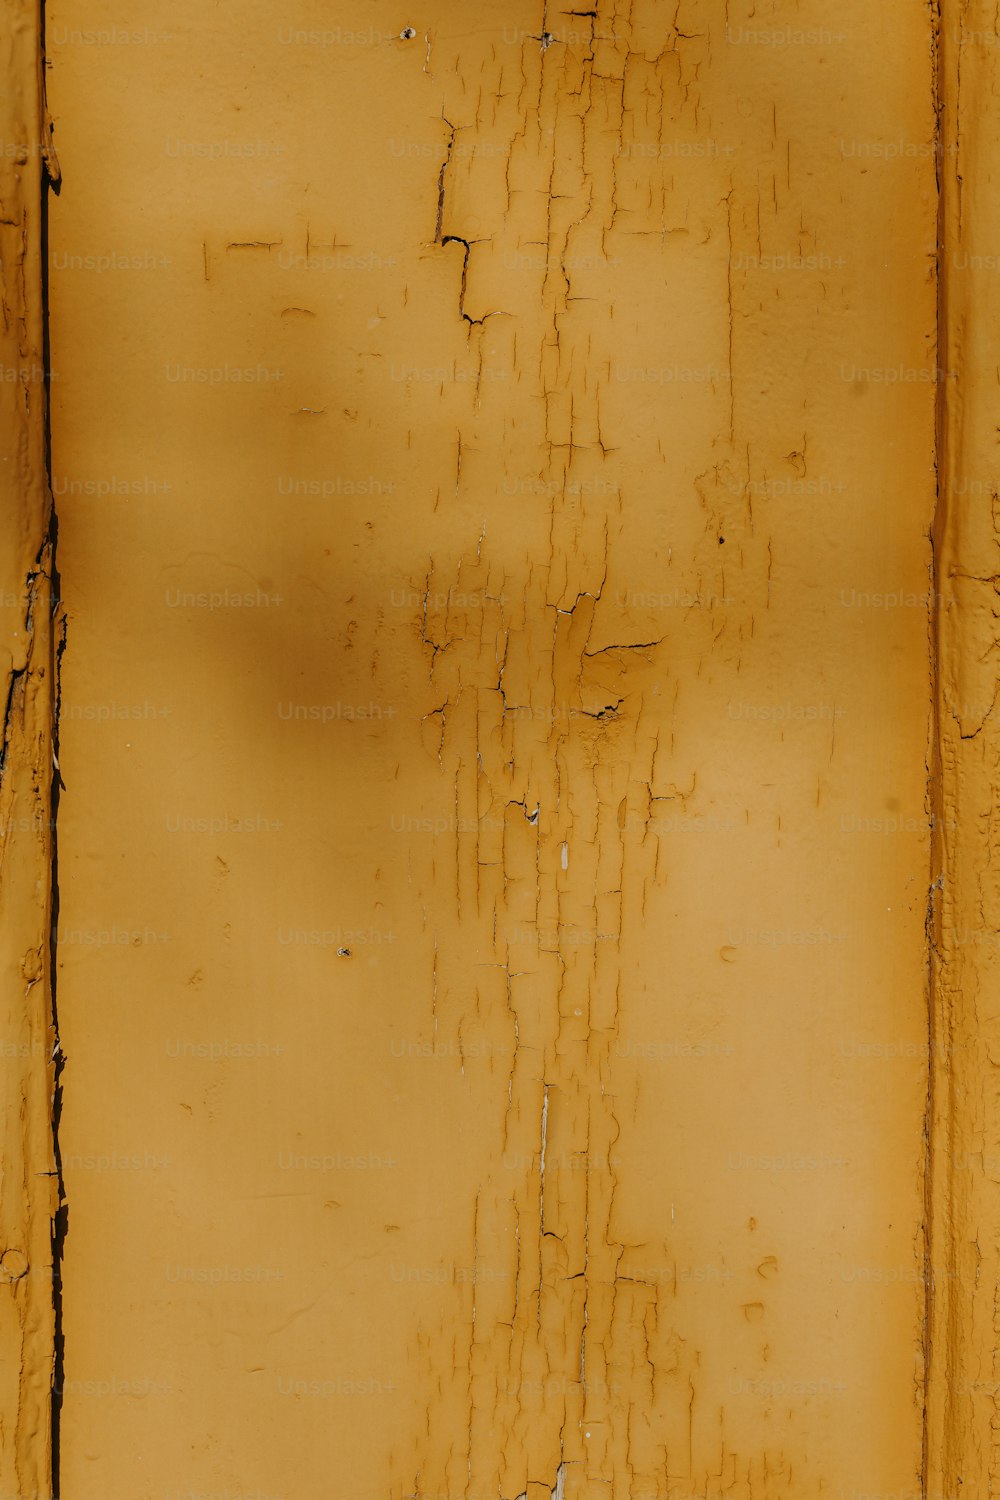 un mur jaune avec de la peinture écaillée dessus